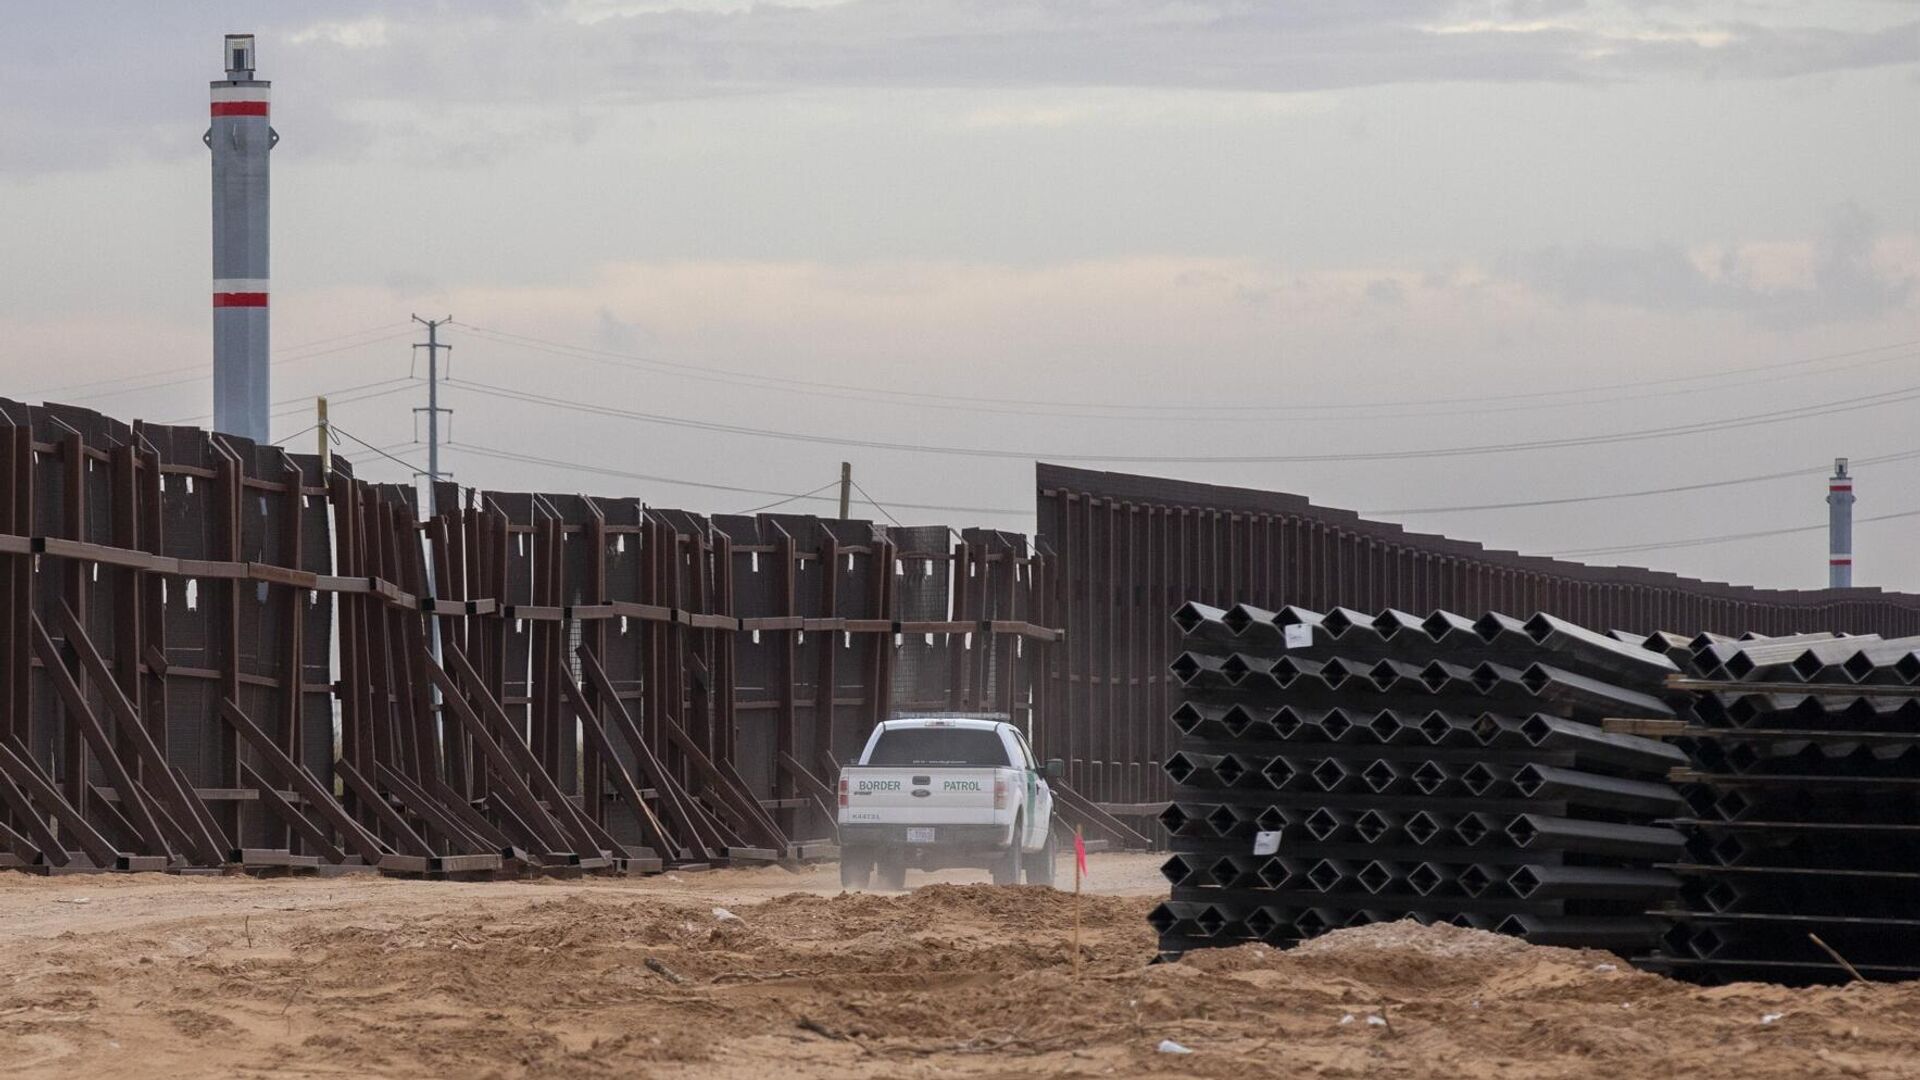 Машина пограничного патруля США едет вдоль конструкций недостроенной стены на границе между США и Мексикой  - РИА Новости, 1920, 01.04.2021